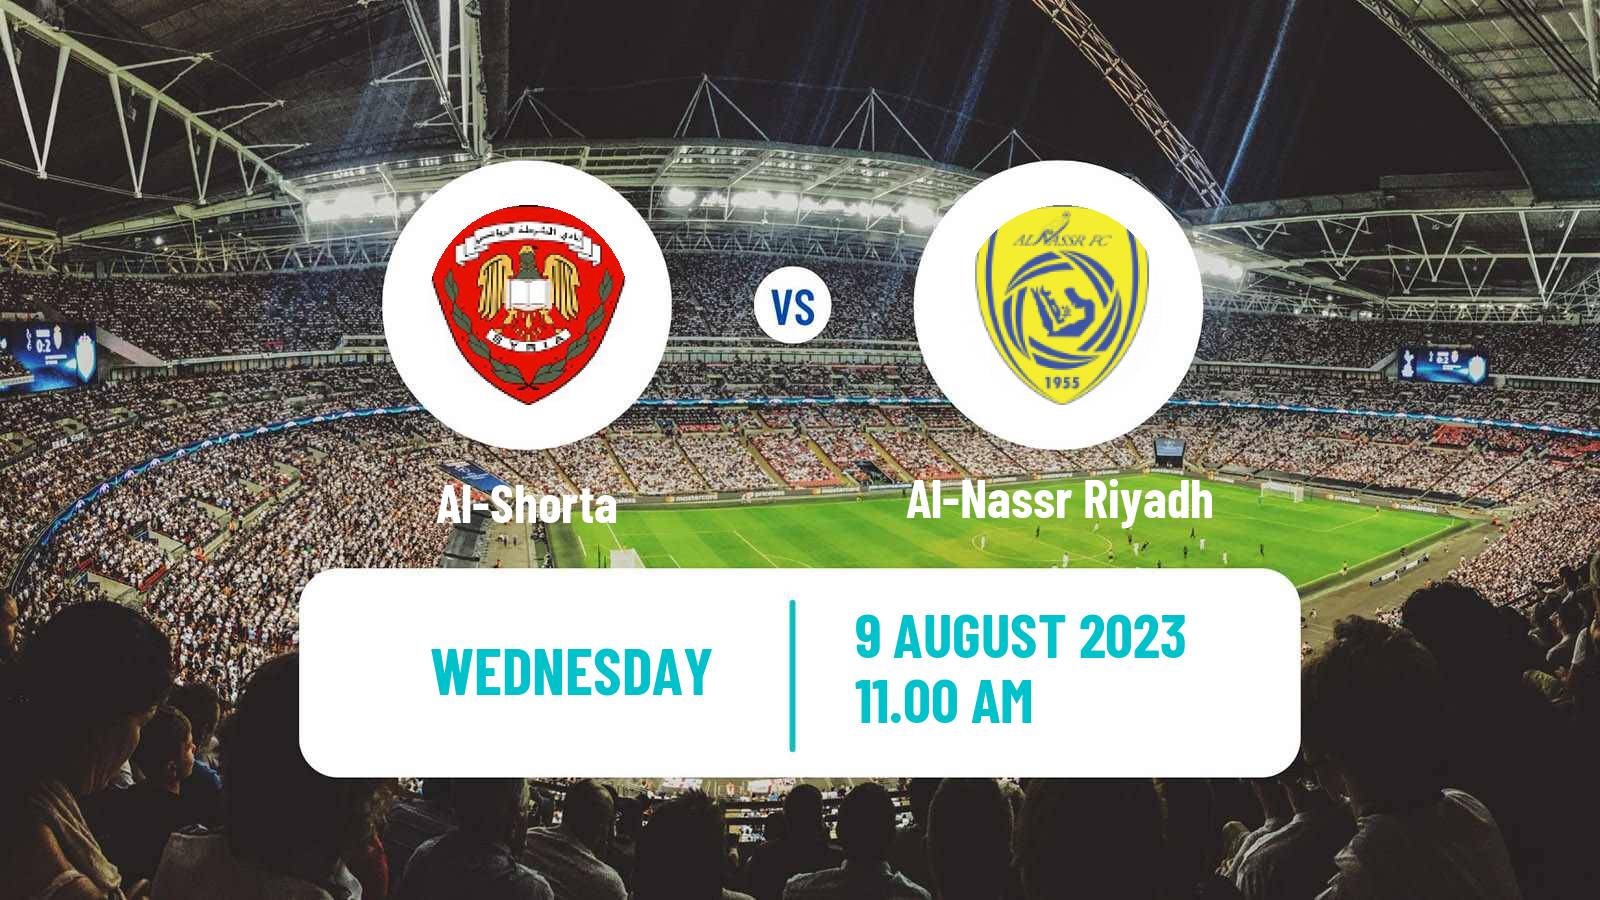 Soccer Arab Club Championship Cup Al-Shorta - Al-Nassr Riyadh